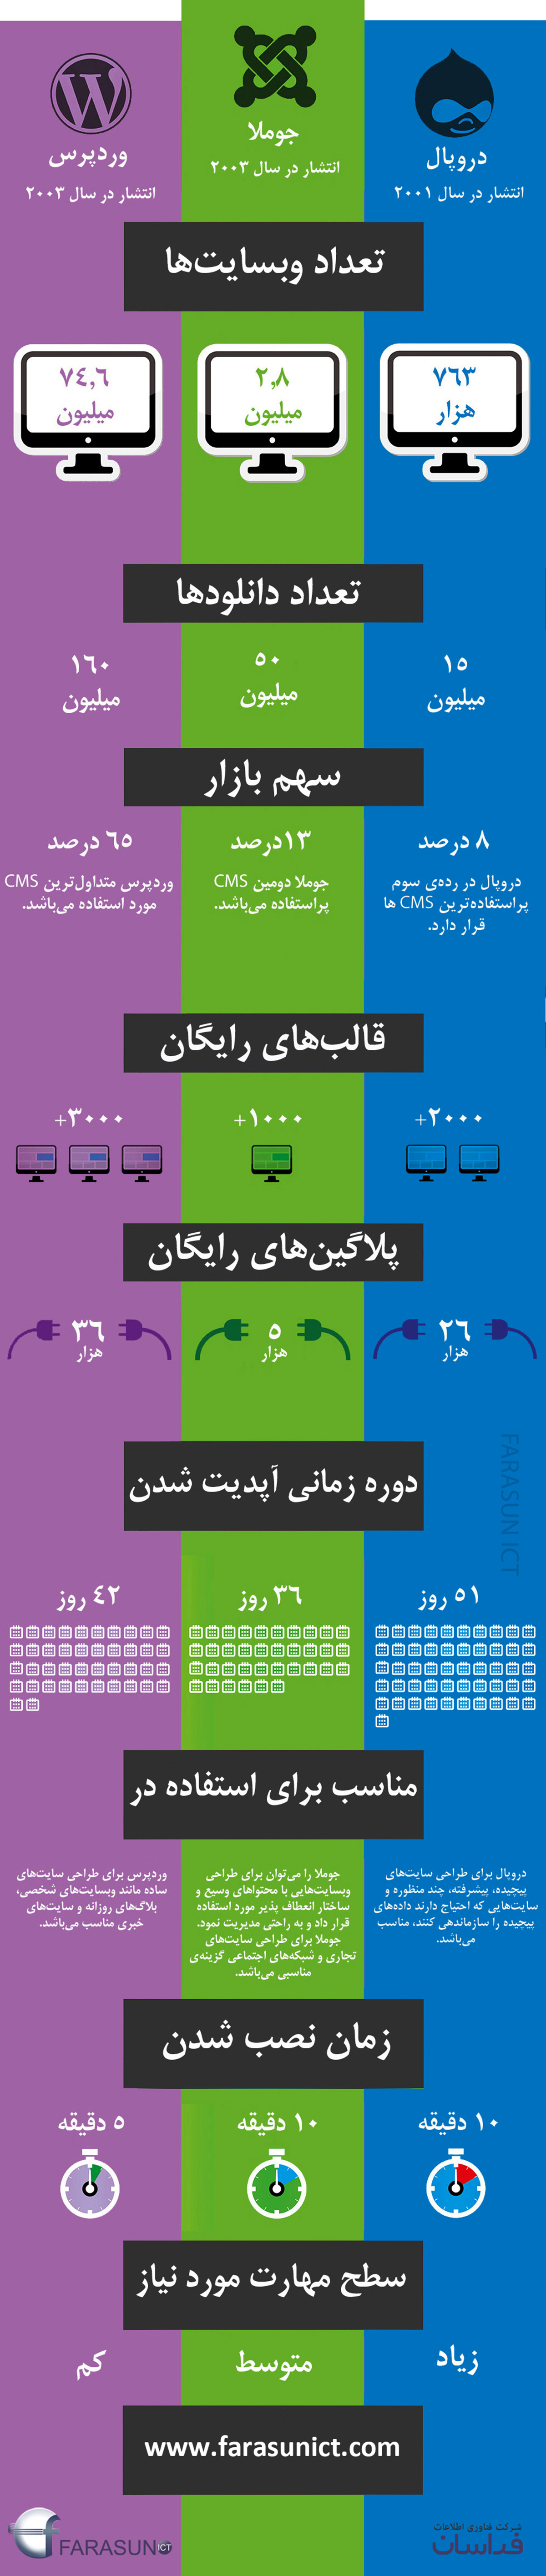 طراحی سایت وردپرس در اصفهان